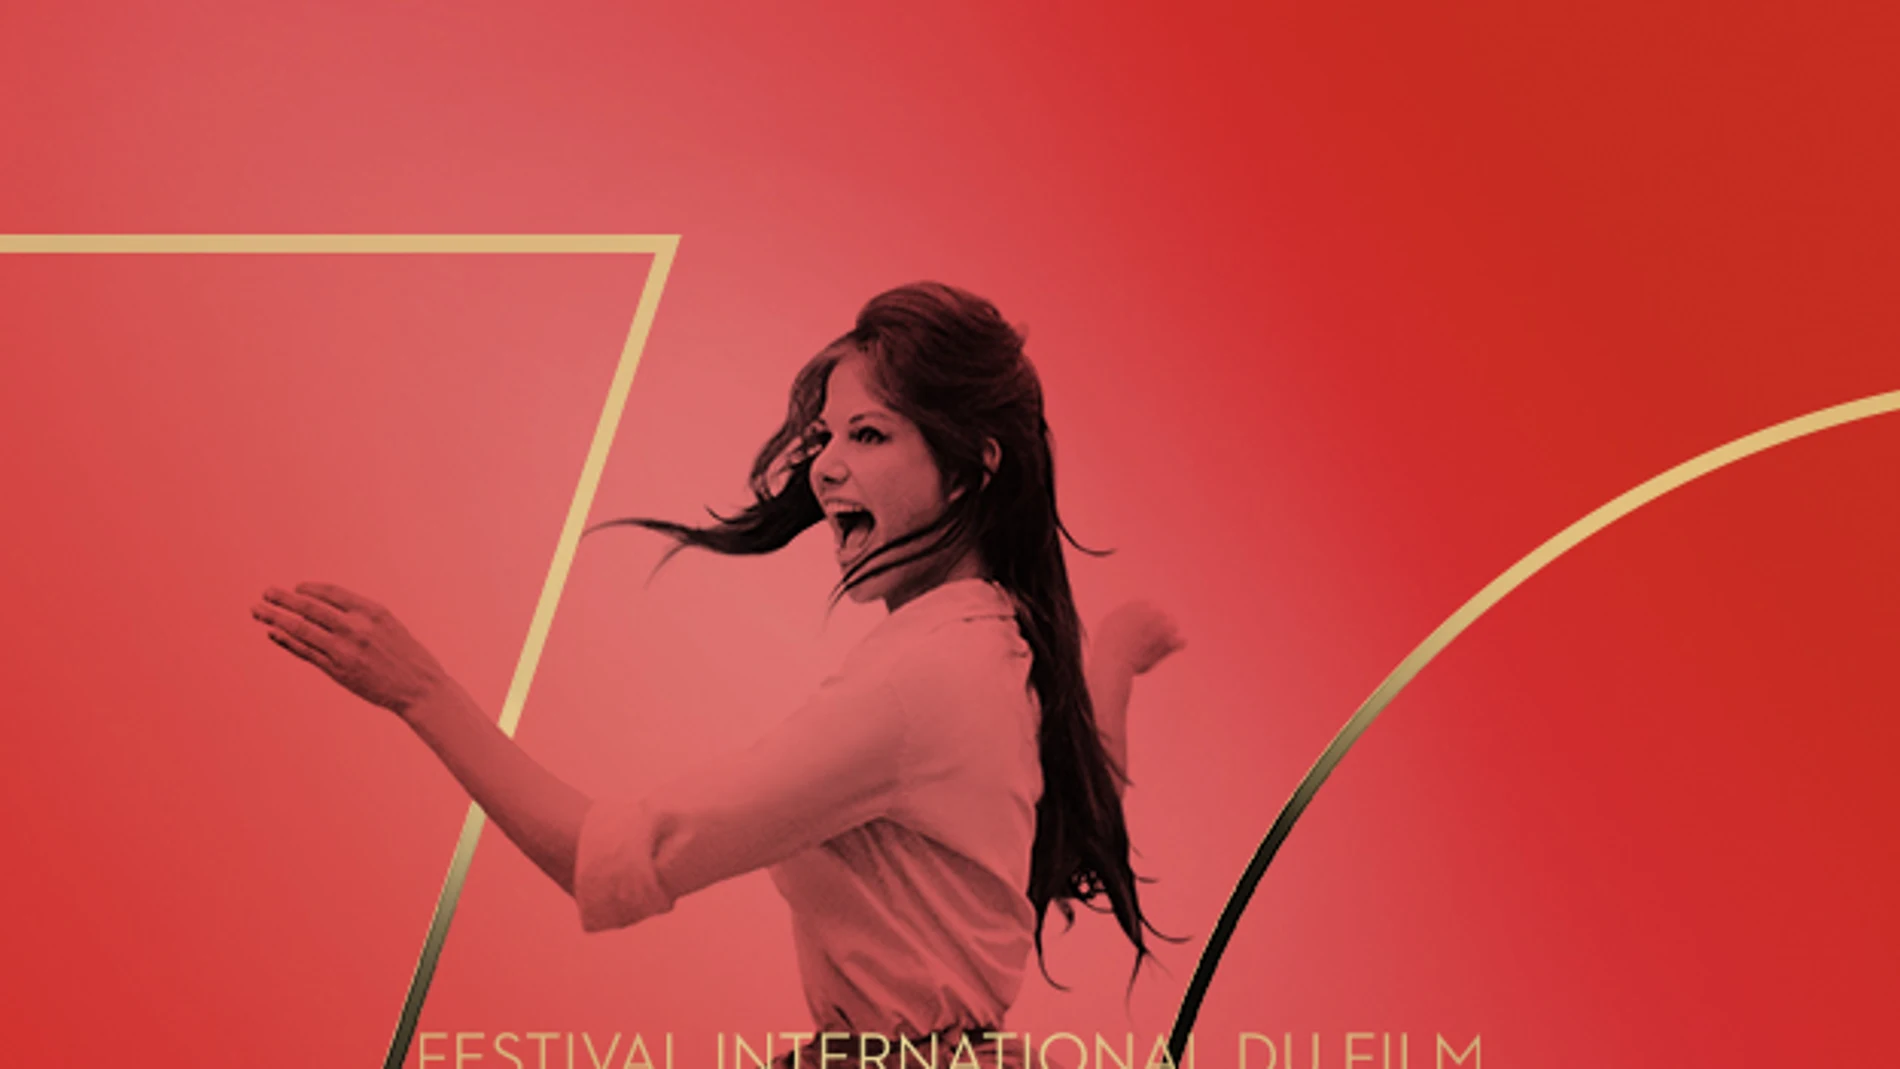 El Festival de Cannes escoge a Claudia Cardinale para su cartel